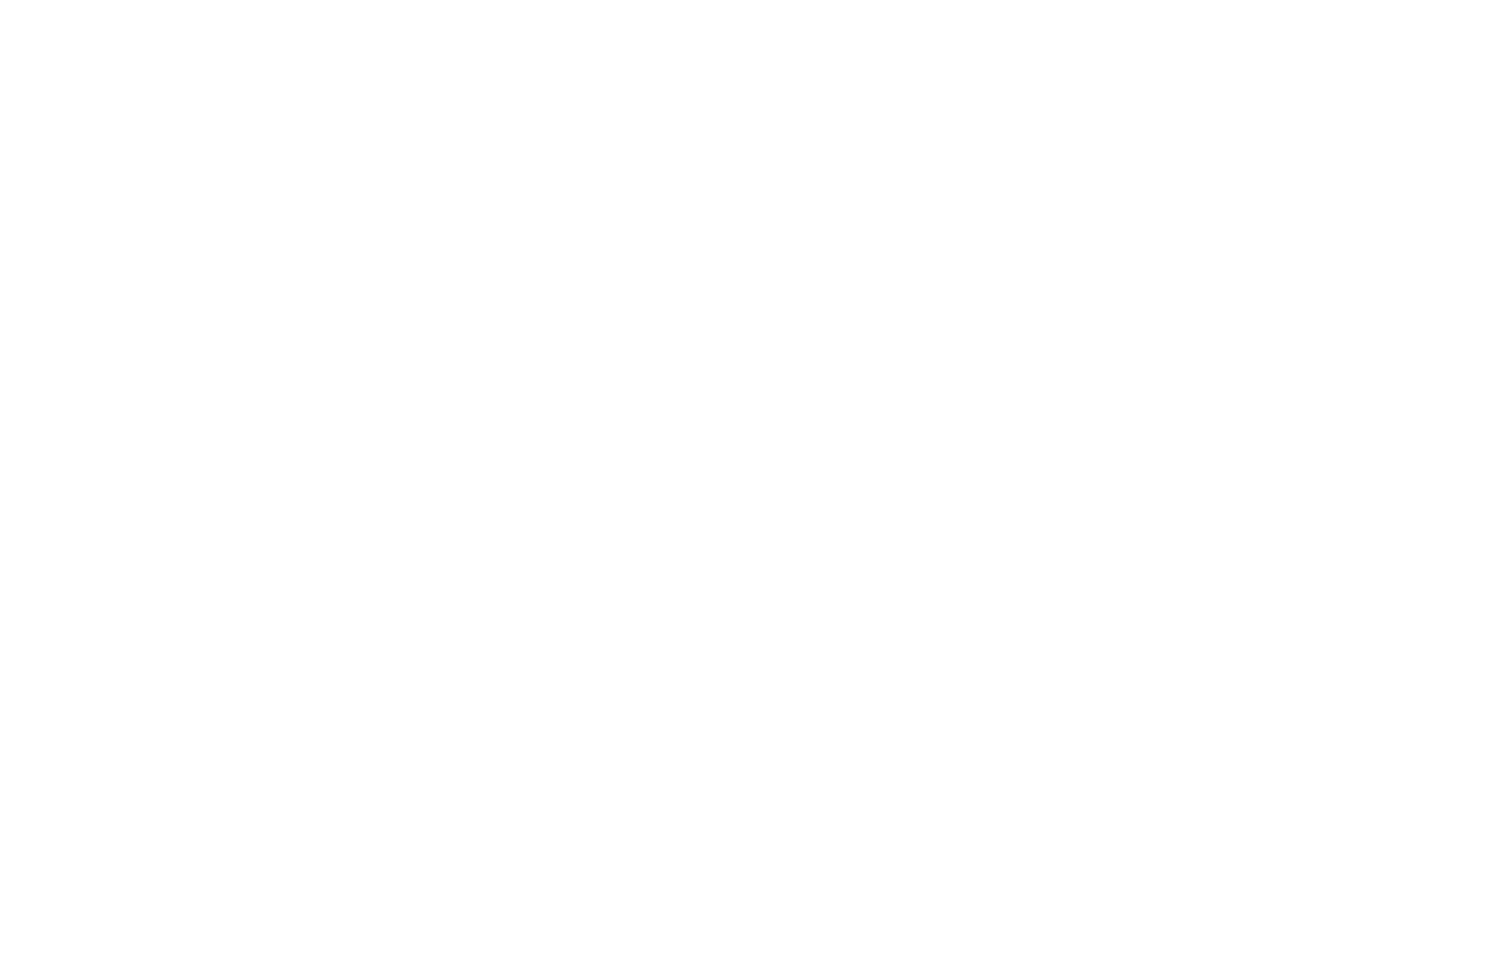 Muslim Space